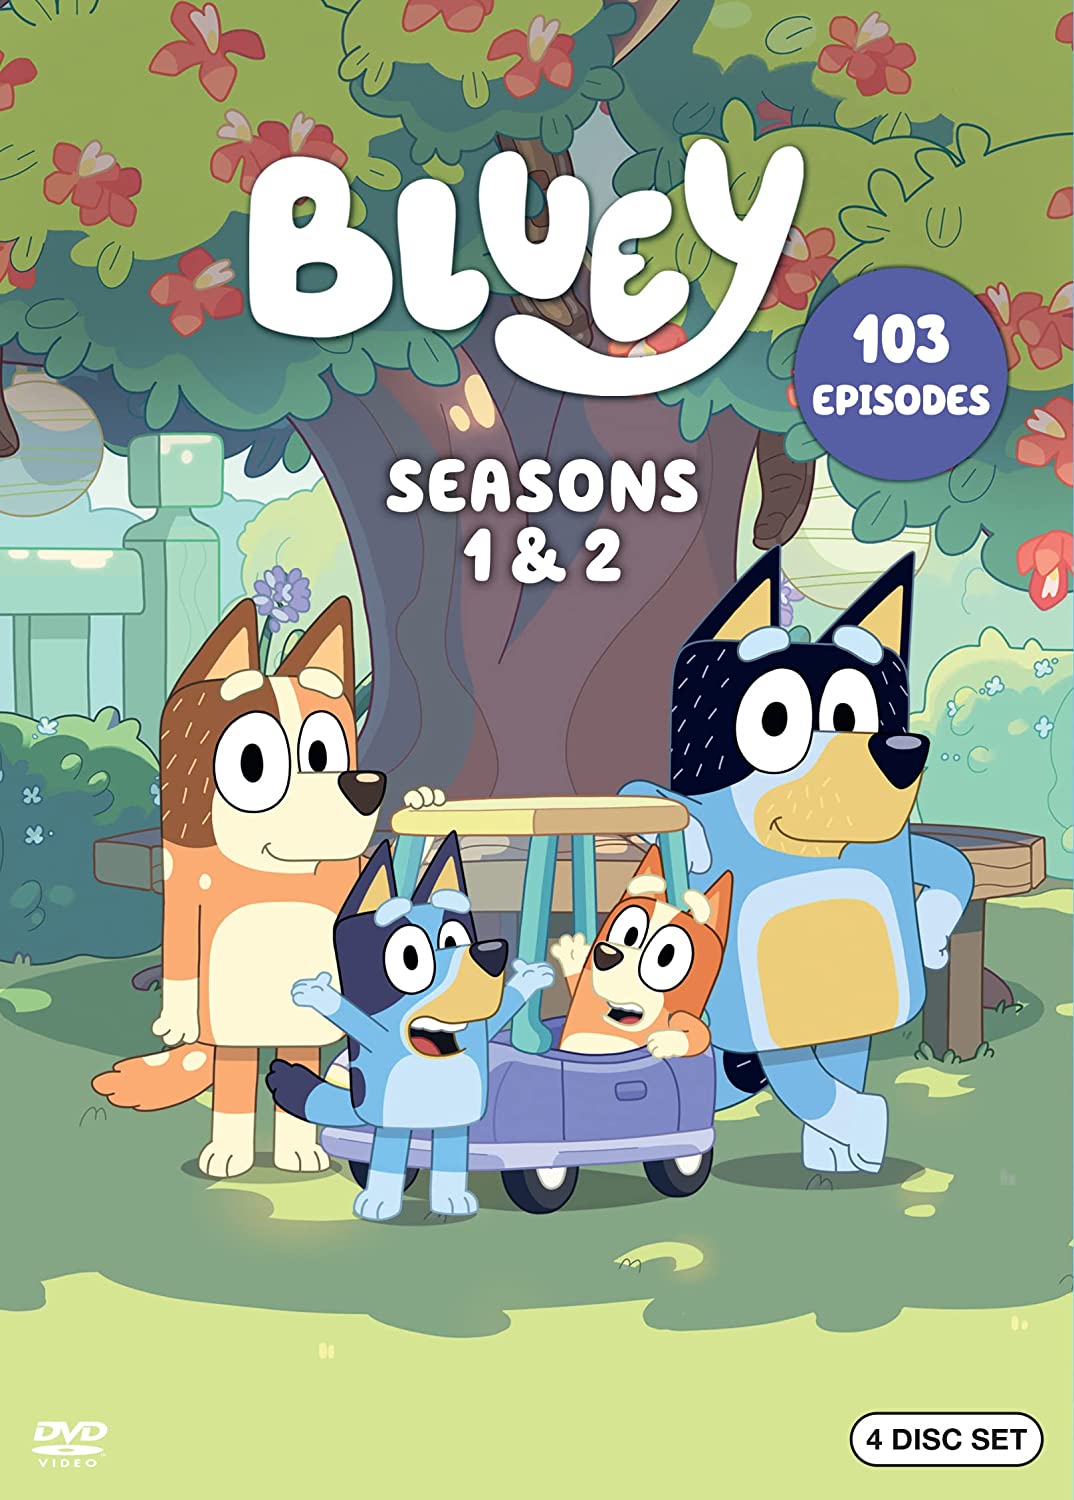 Image for "Bluey Season 1 & 2"